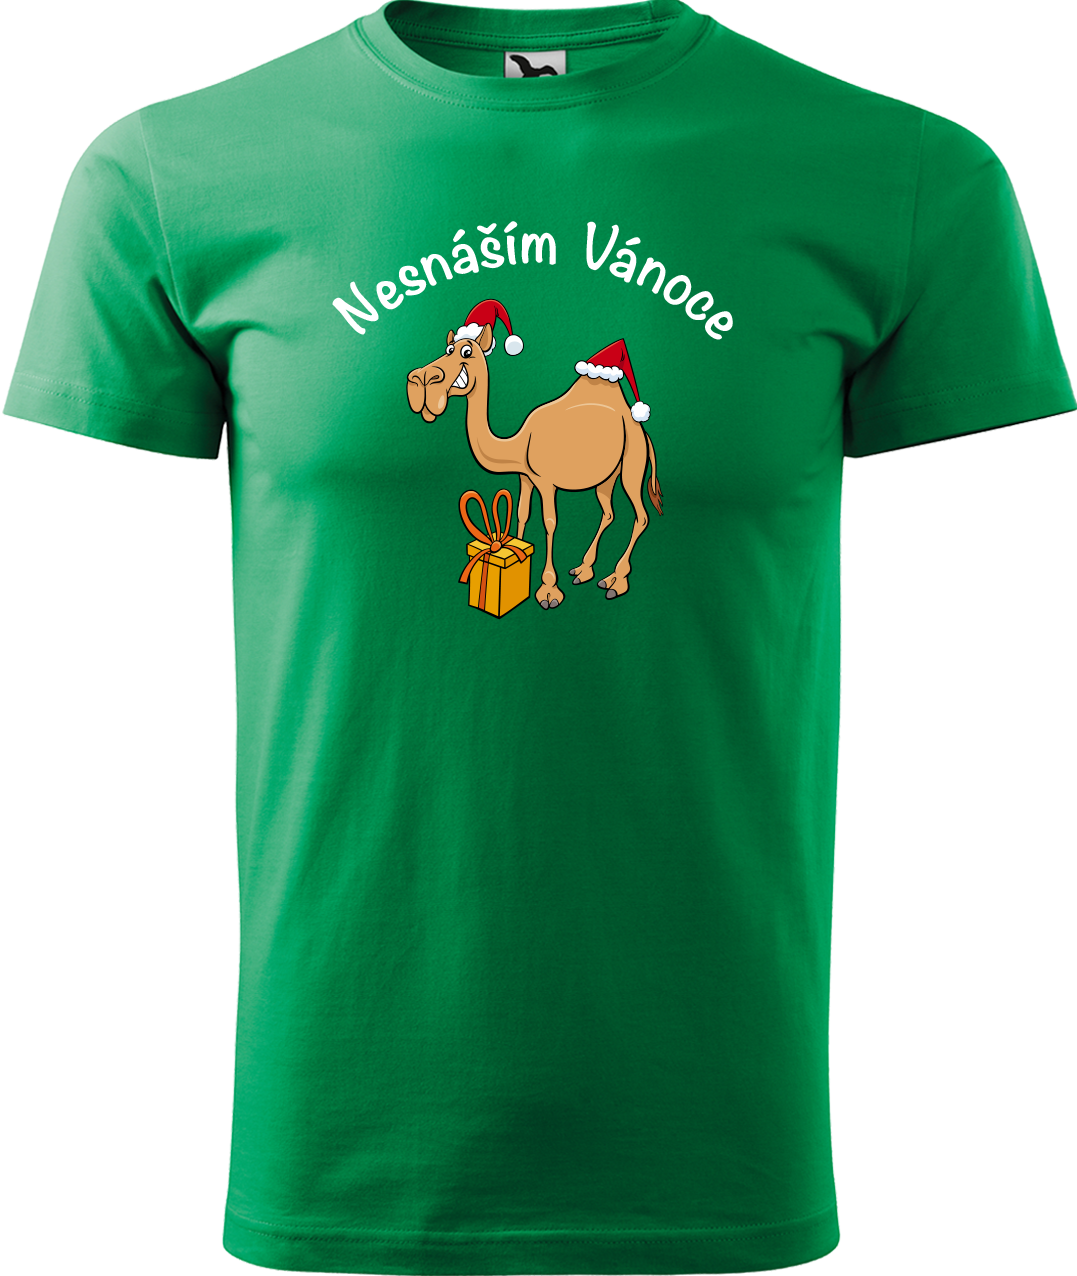 Pánské vánoční tričko - Nesnáším Vánoce Velikost: S, Barva: Středně zelená (16)